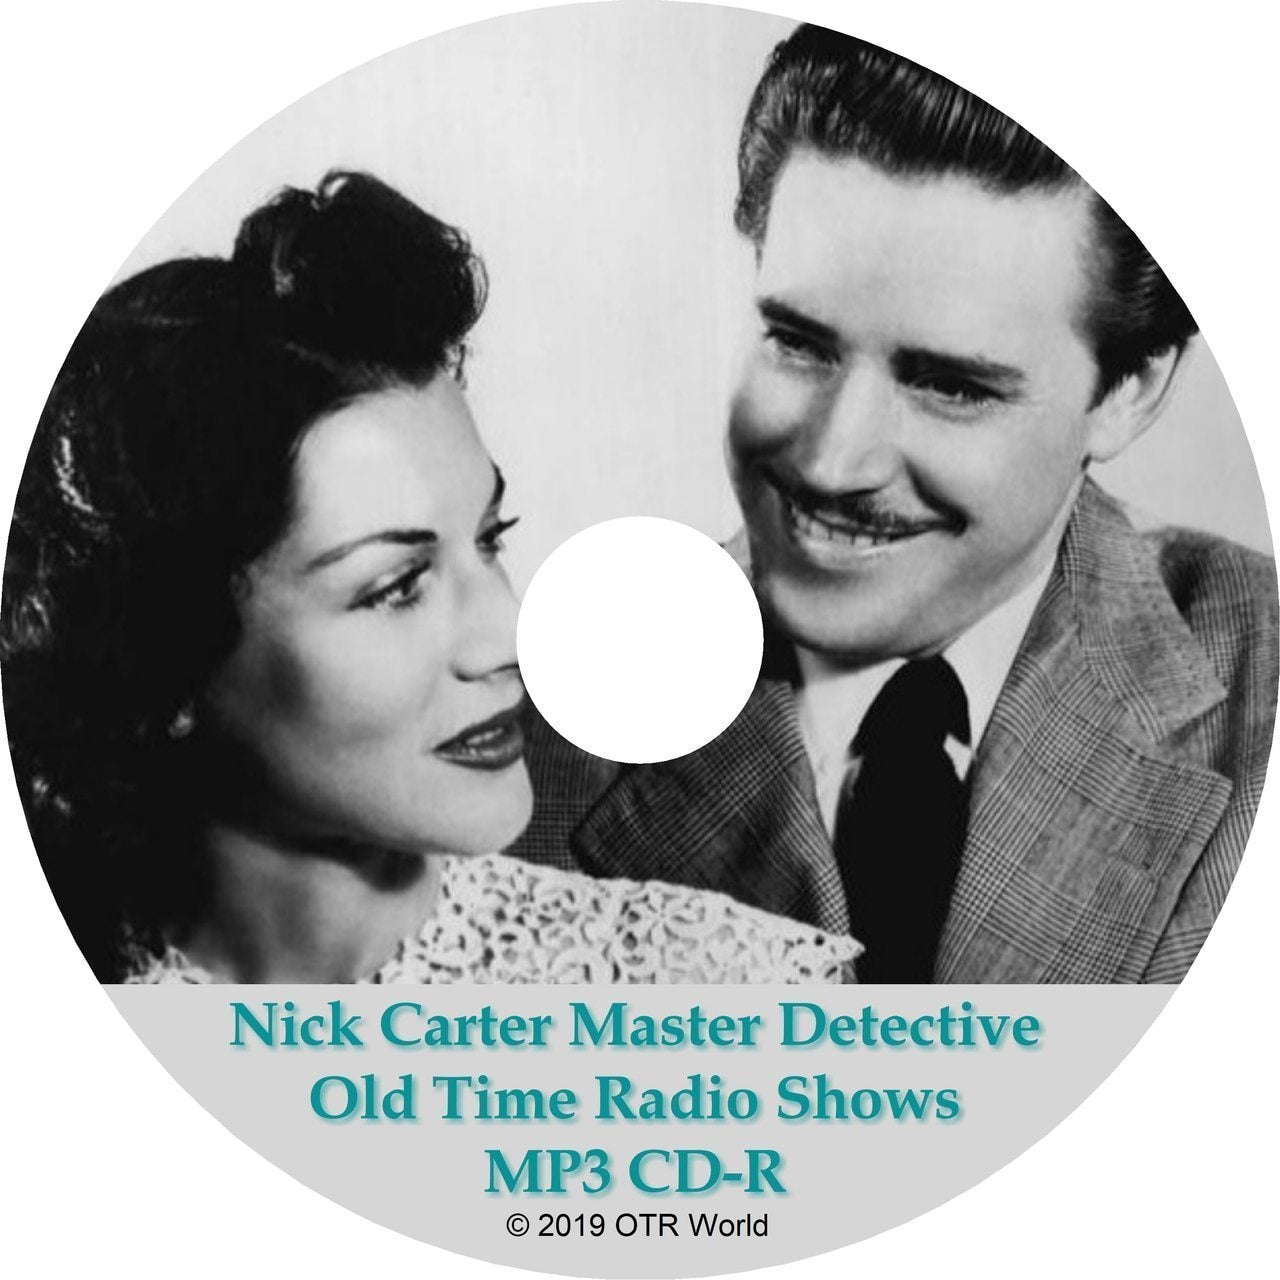 Nick Carter Master Detective OTR MP3 On 2 CD-R 143 Episodes